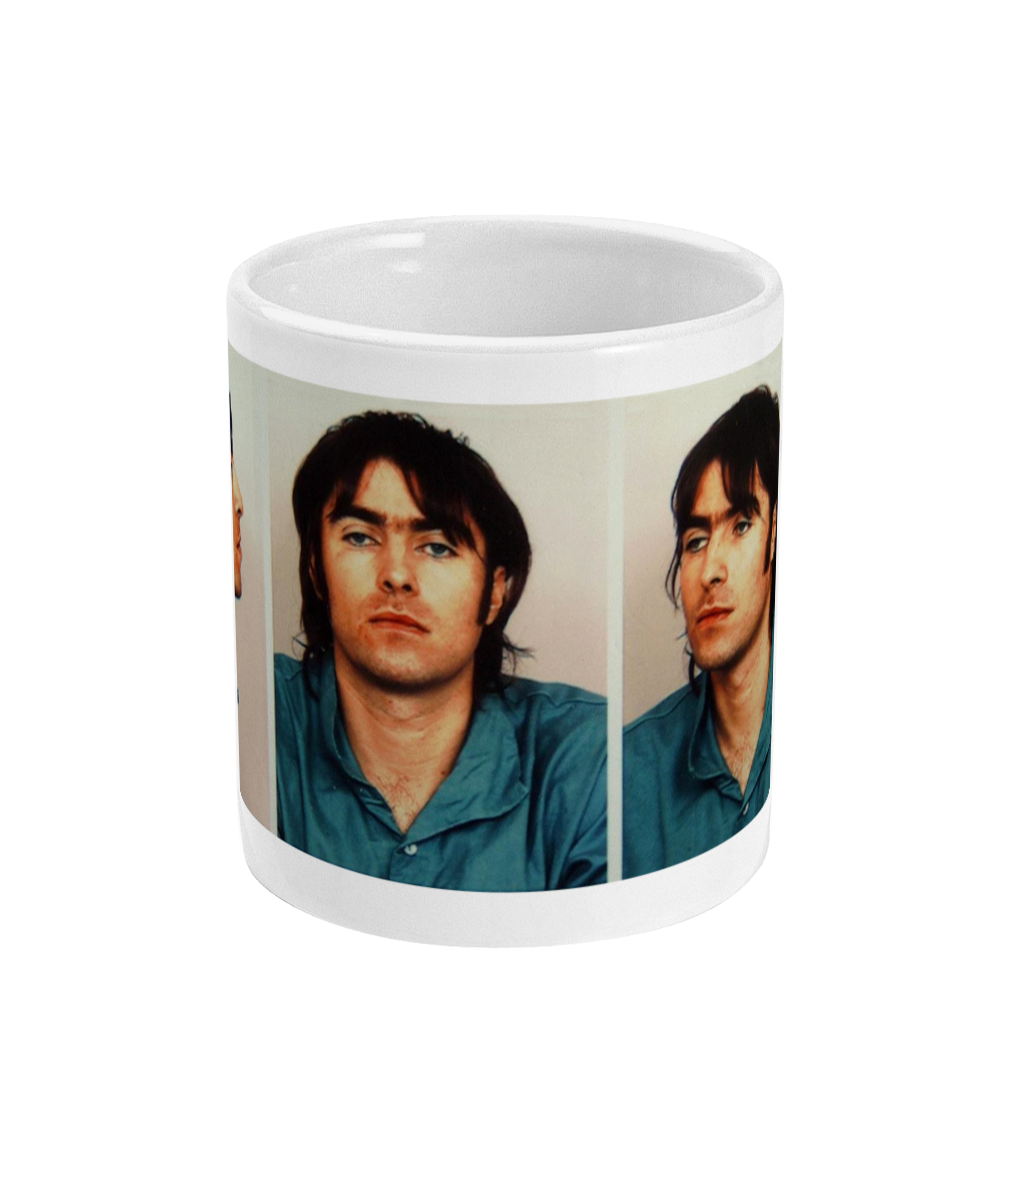 Liam Gallagher - Mug Shot - Mug